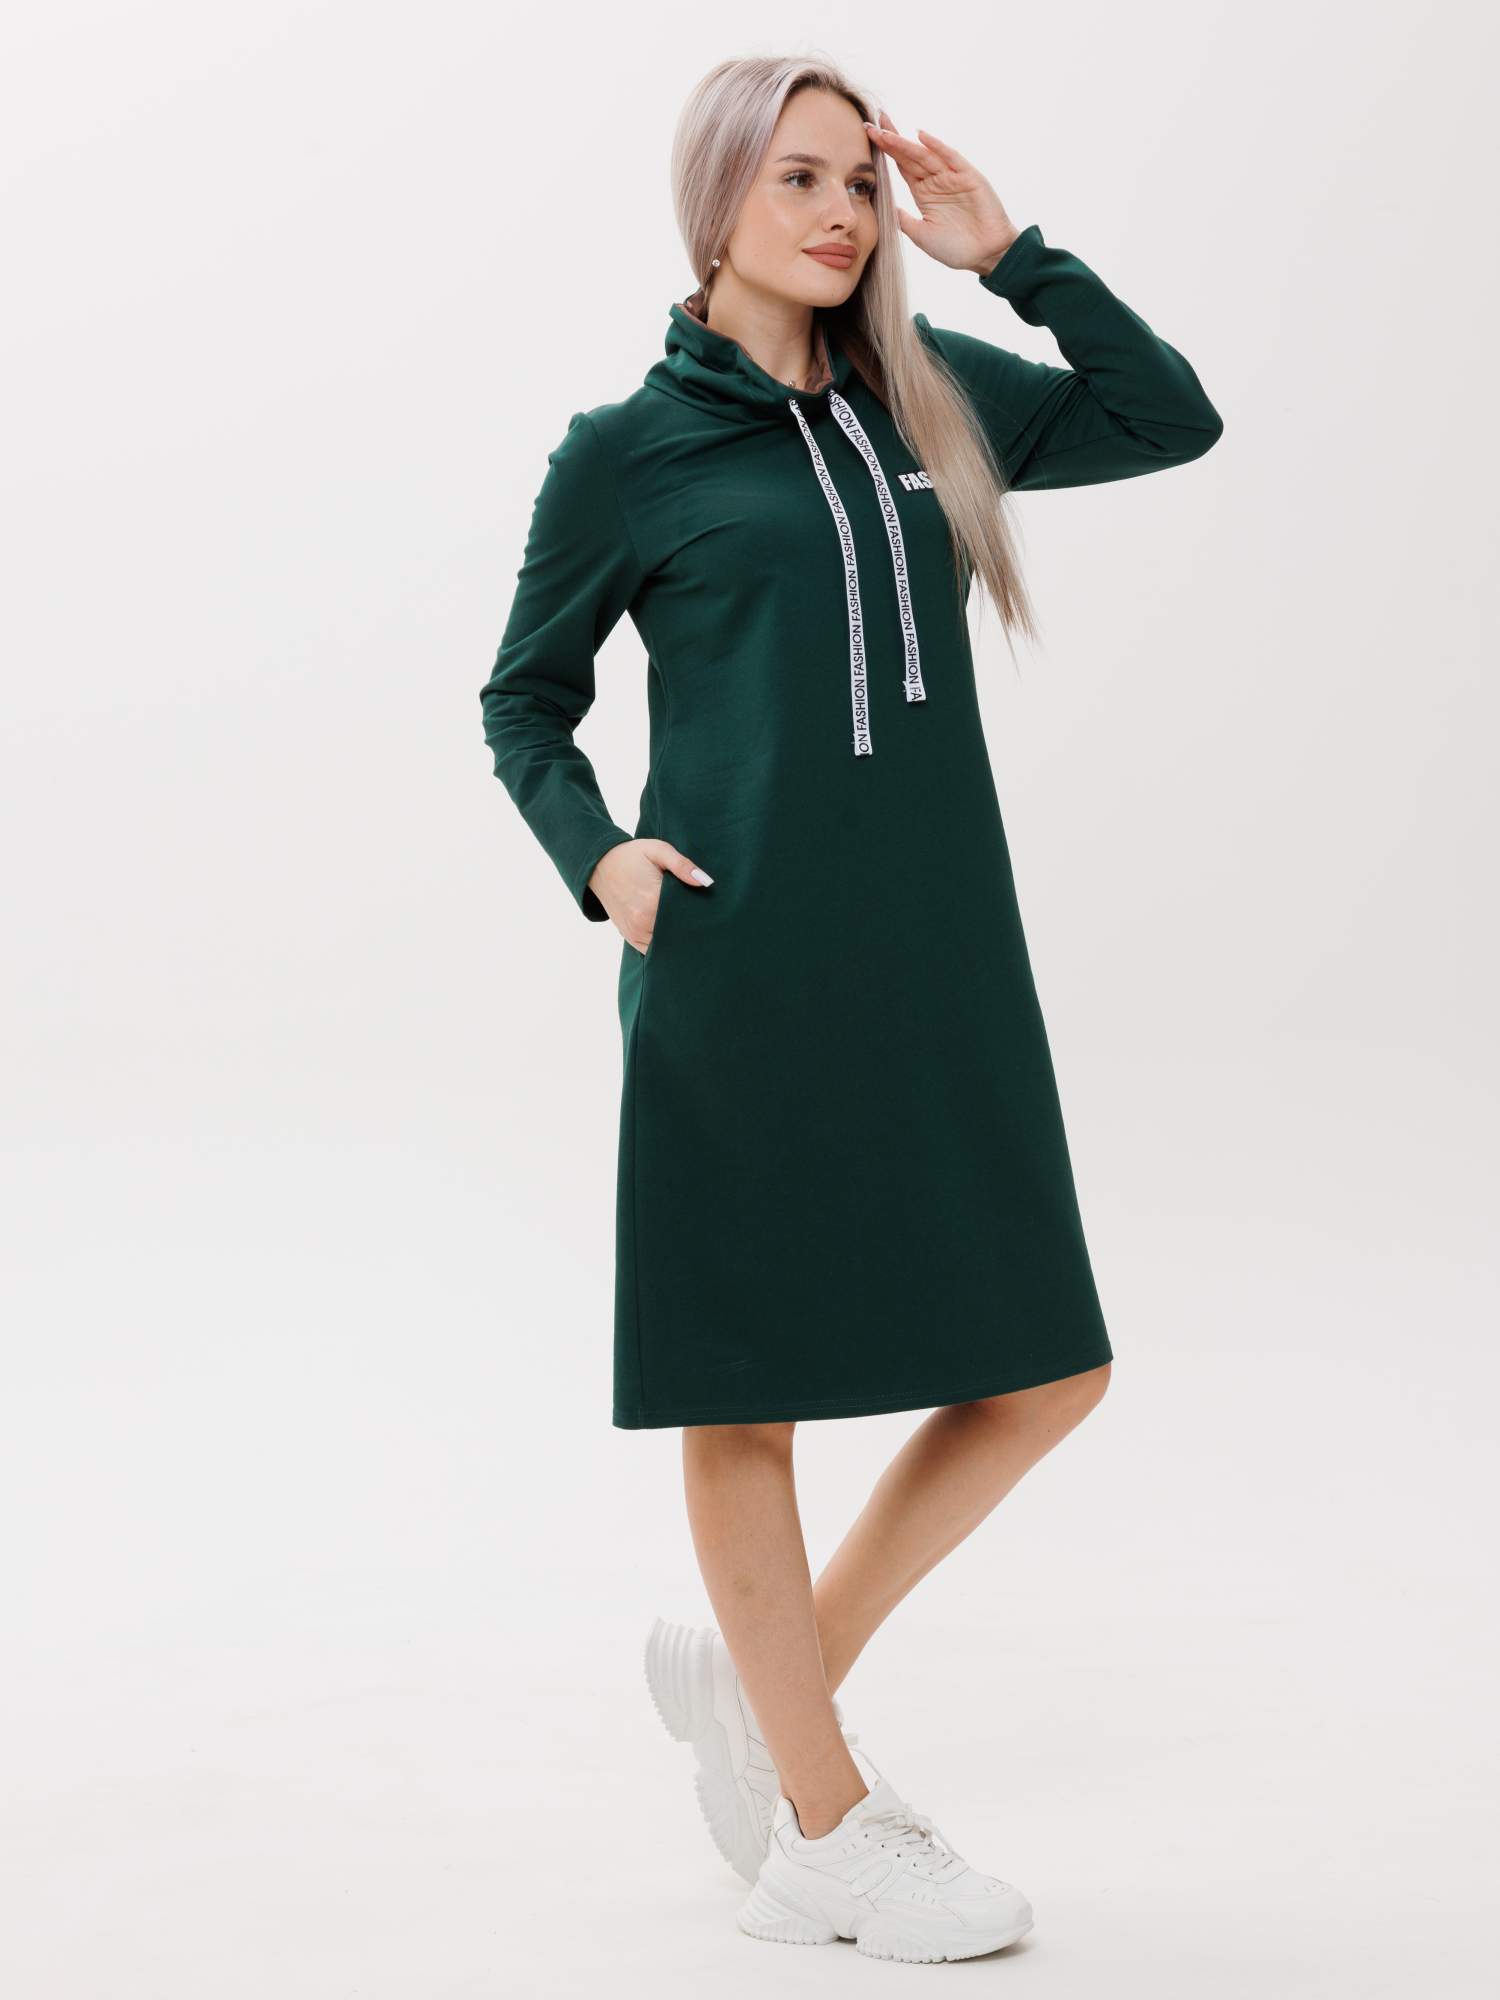 Платье женское ИП Салимзянова О.В П-120/1 зеленое 54 RU